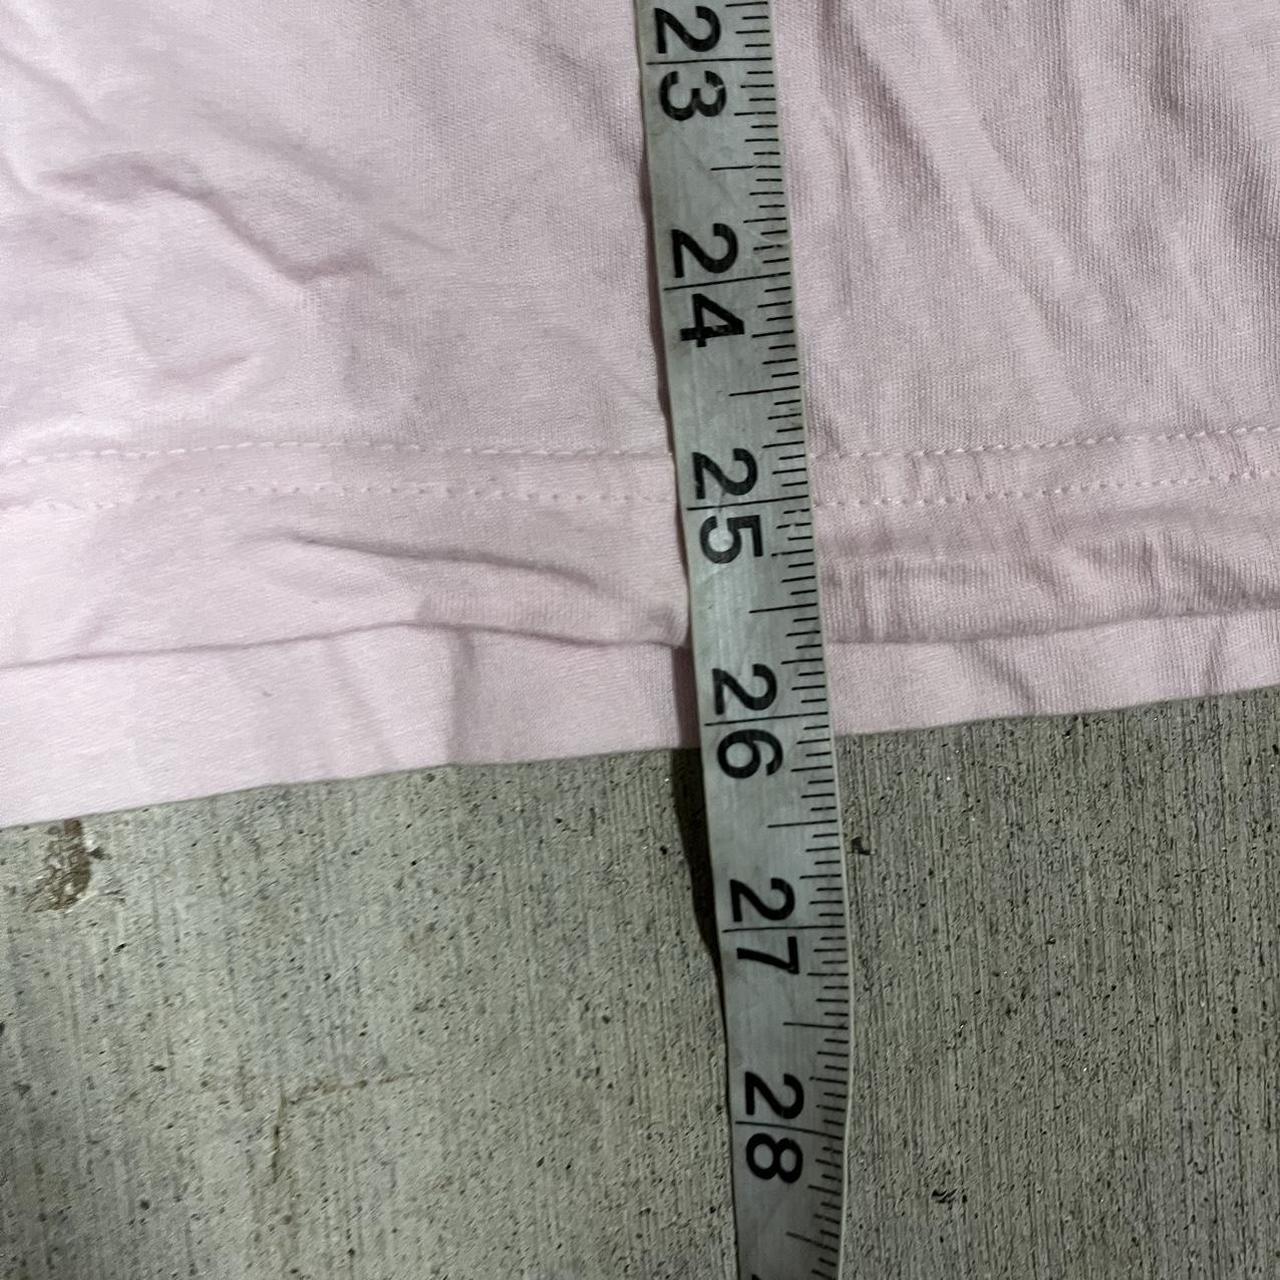 Pink Gorillaz Spellout shirt Size... - Depop